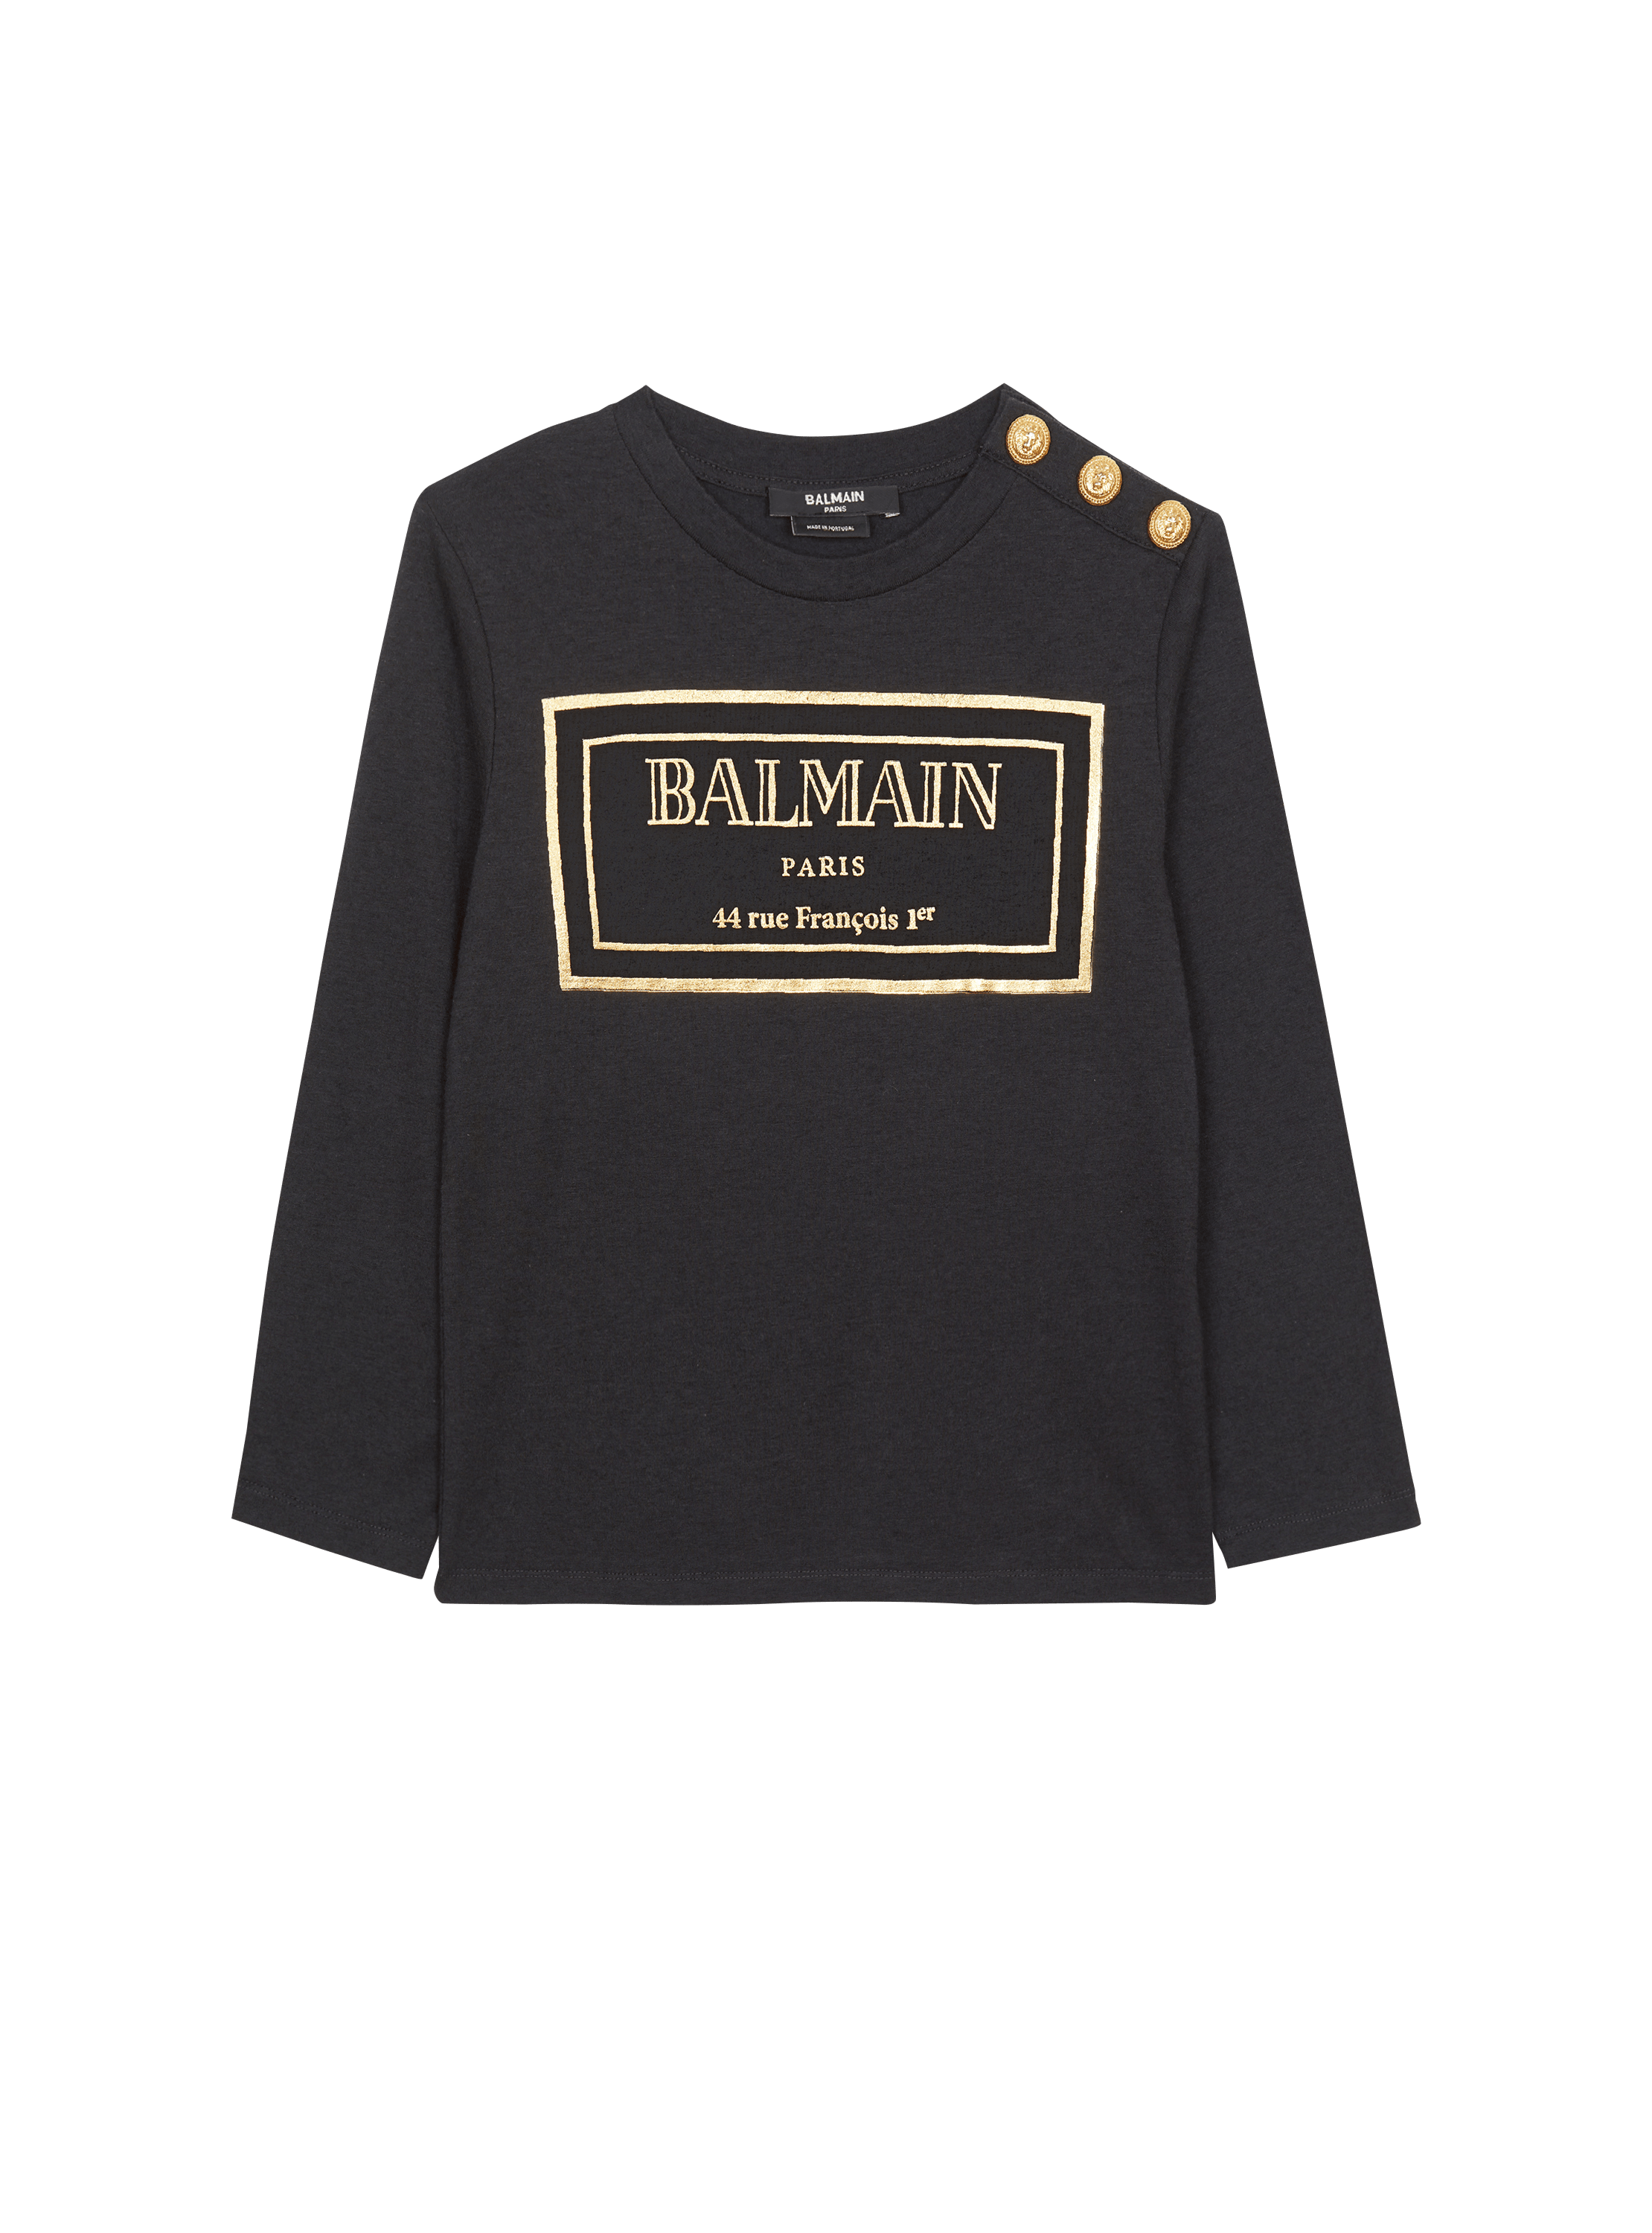 Balmain Paris T-shirt - Child | BALMAIN